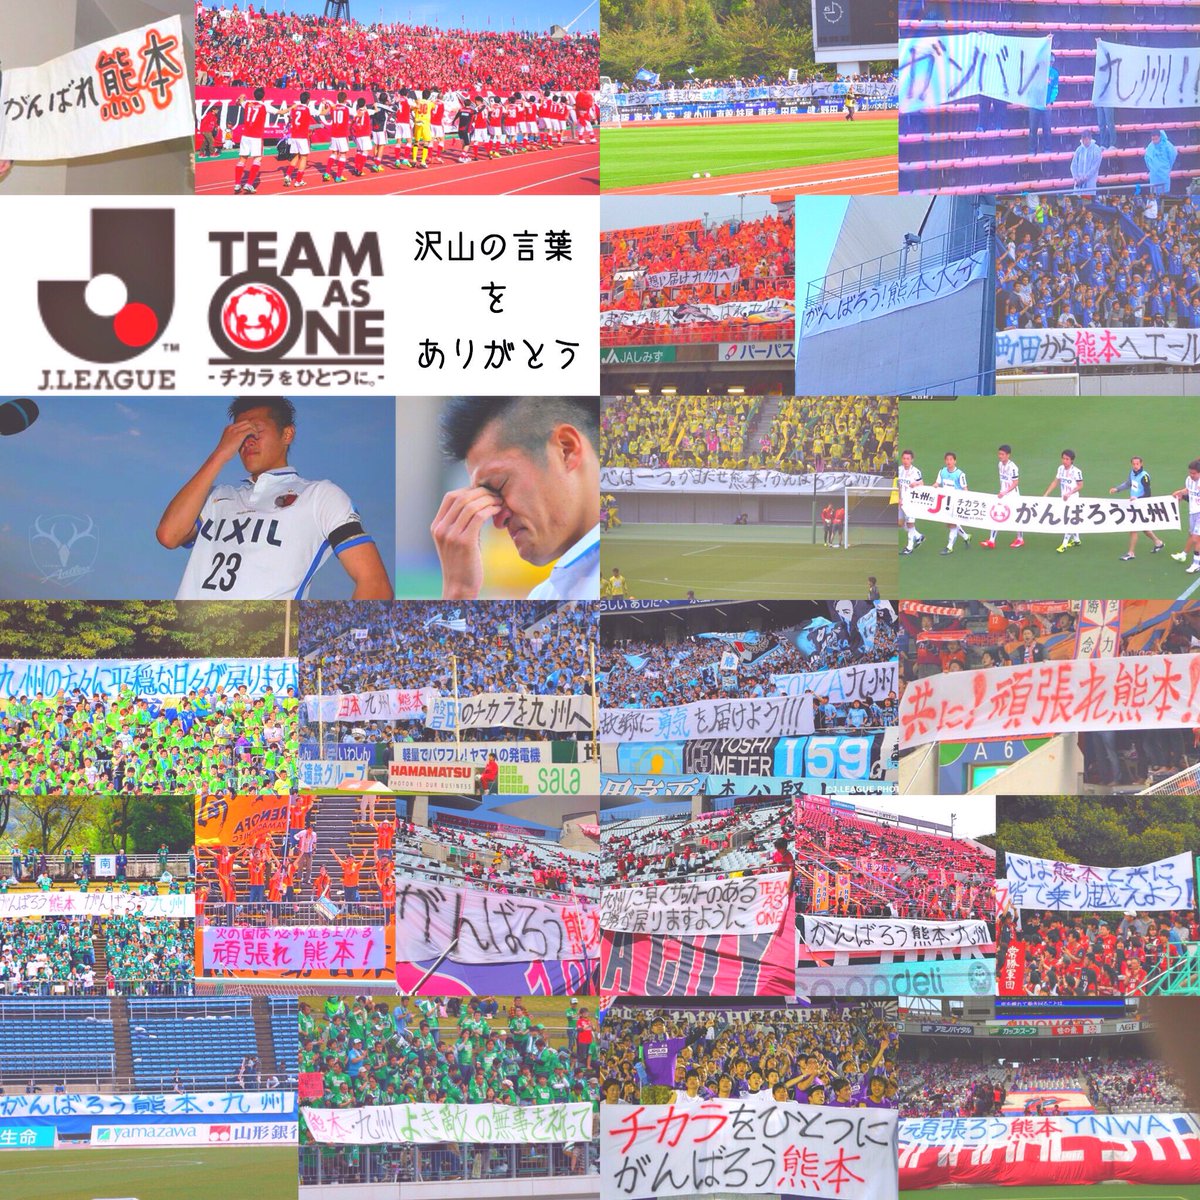 Reina Pa Twitter 熊本県民として サッカー好きとして Jリーグ好きとして 沢山のチームからの 素敵な横断幕嬉しいです ありがとうございます 早くサッカー観戦 したいな 熊本地震 Jリーグ チカラをひとつに 感謝